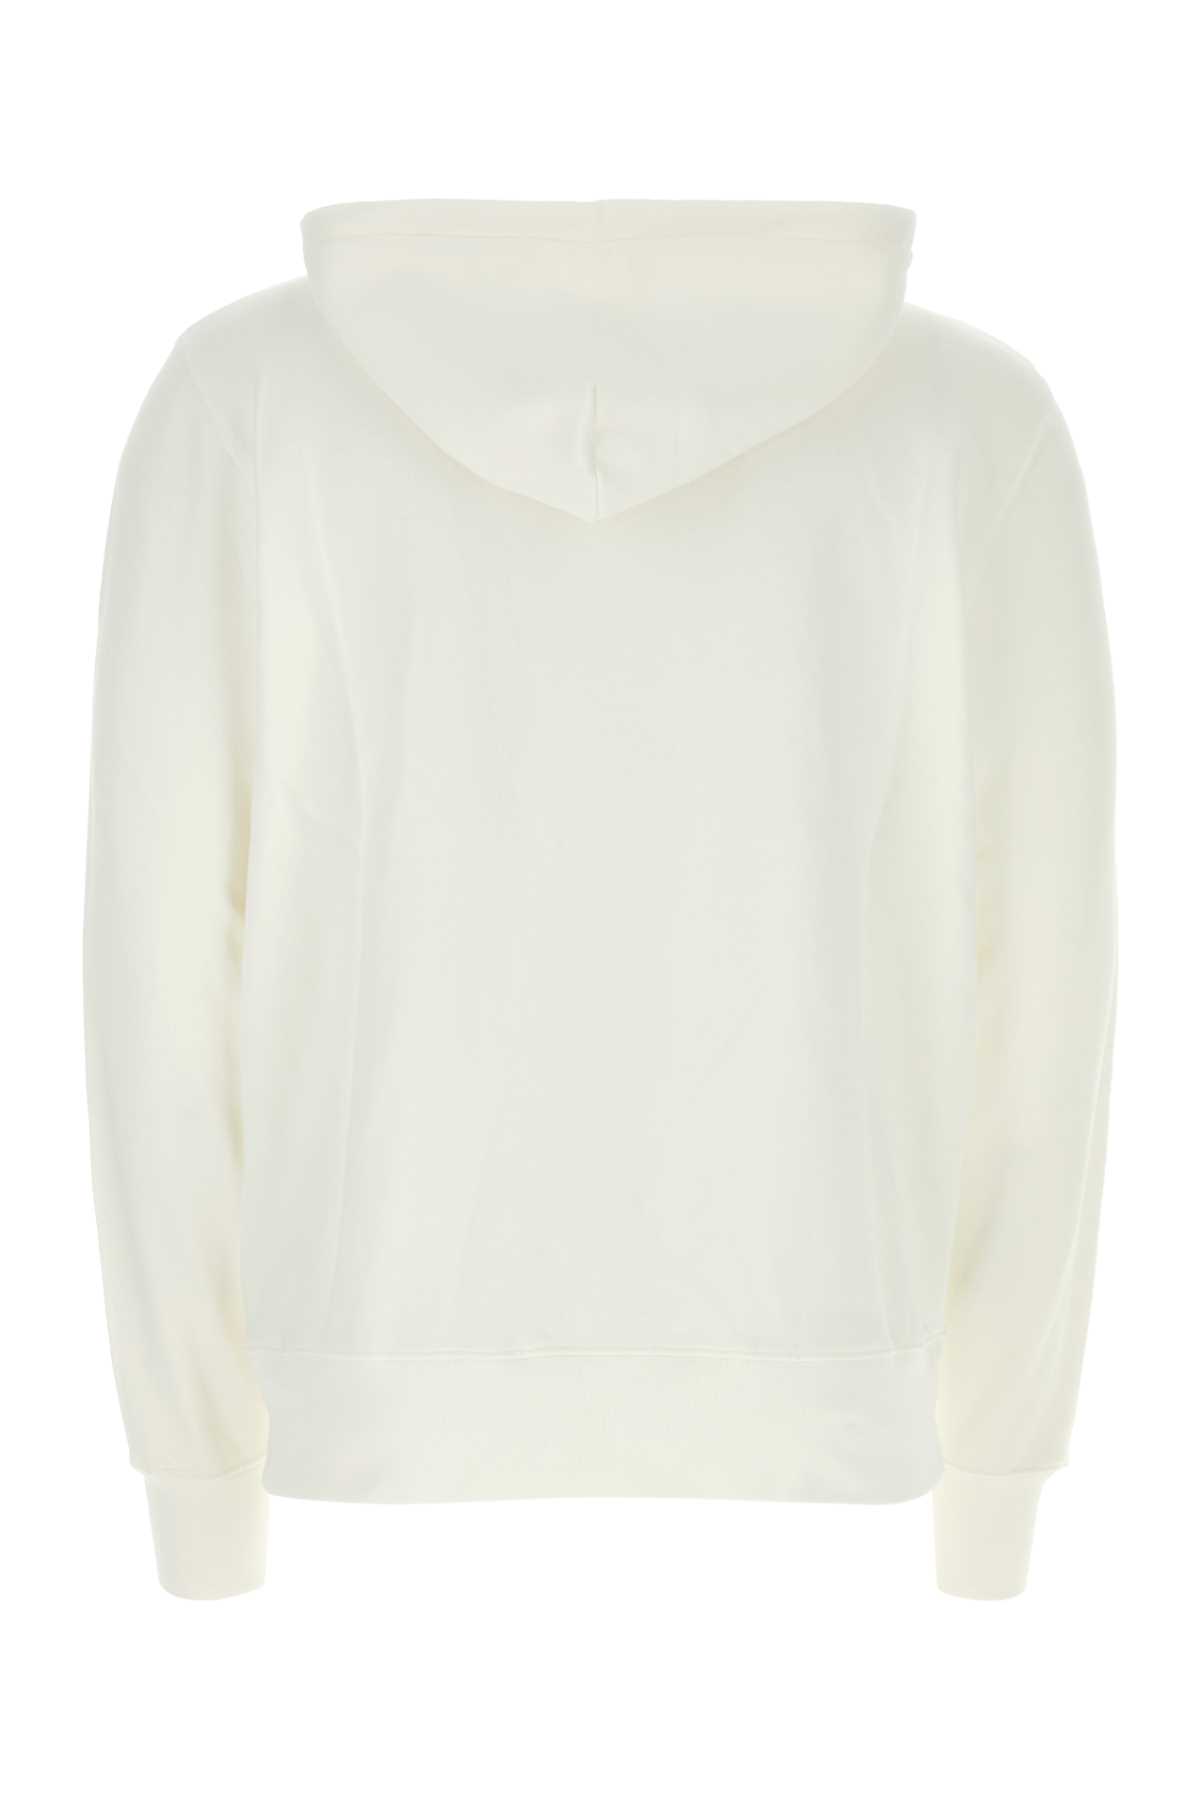 Shop Autry White Cotton Sweatshirt In 508w